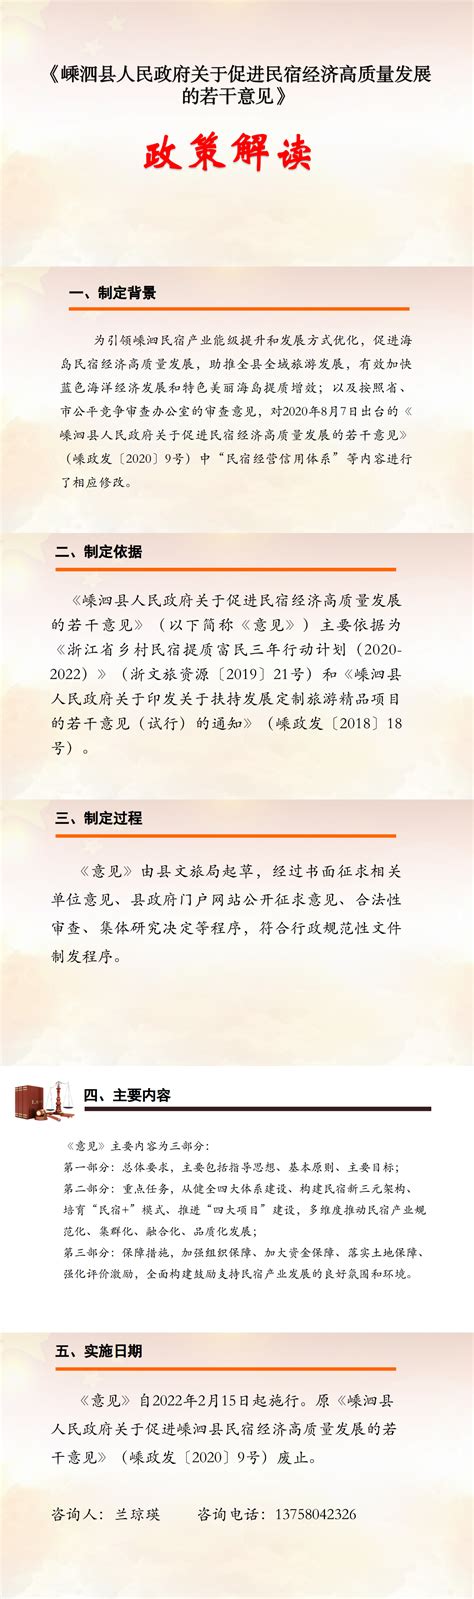 中国旅游与民宿发展协会正式发布《2020年度中国民宿行业发展研究报告》-科技频道-和讯网